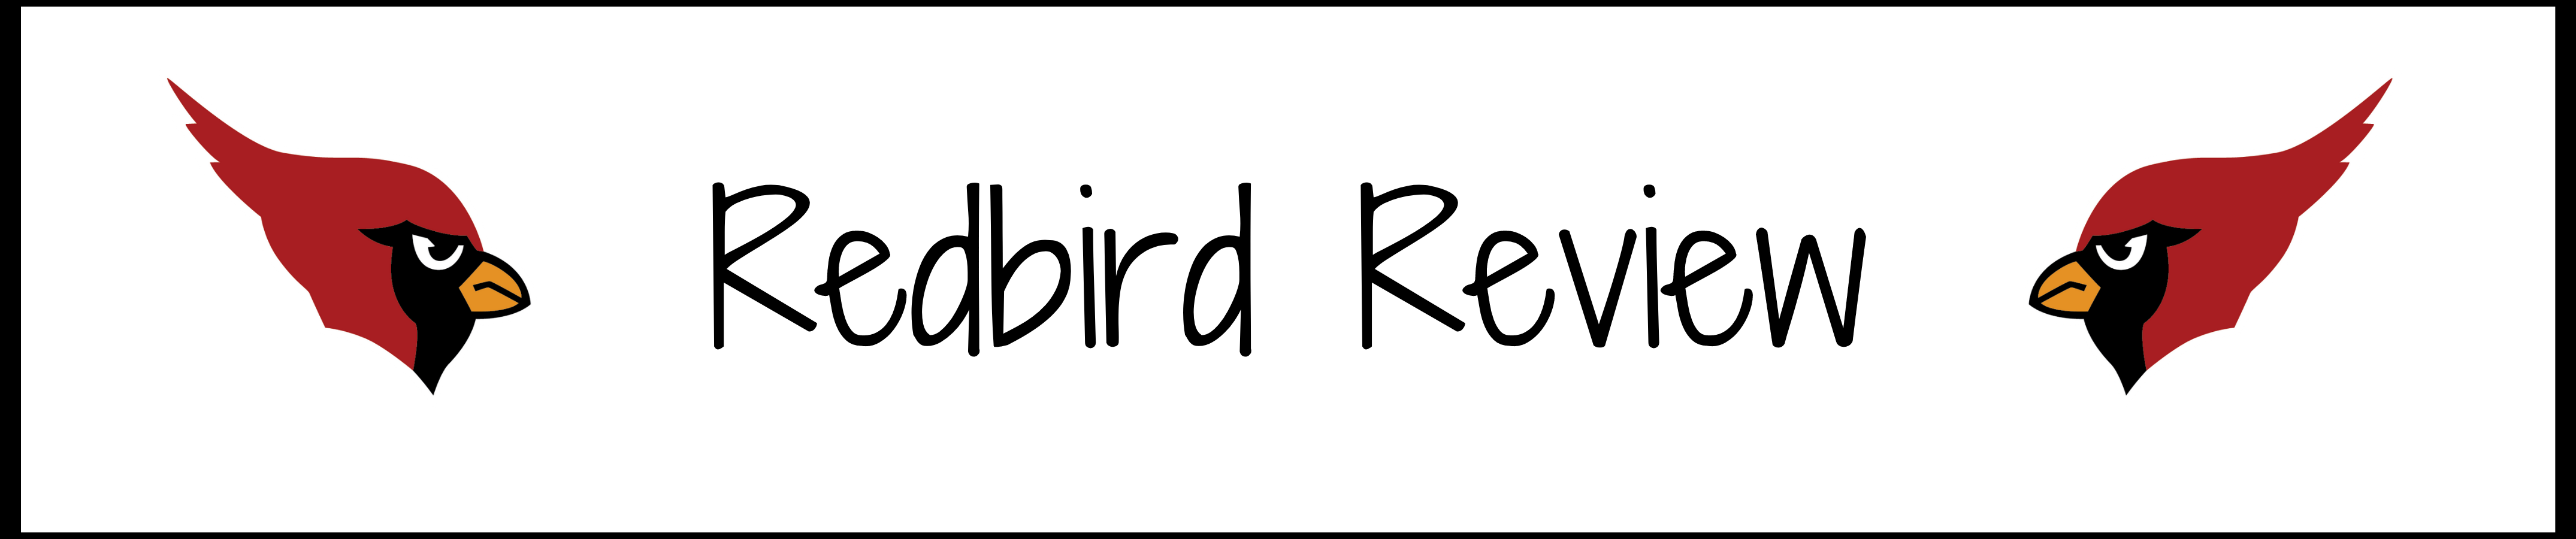 redbird review